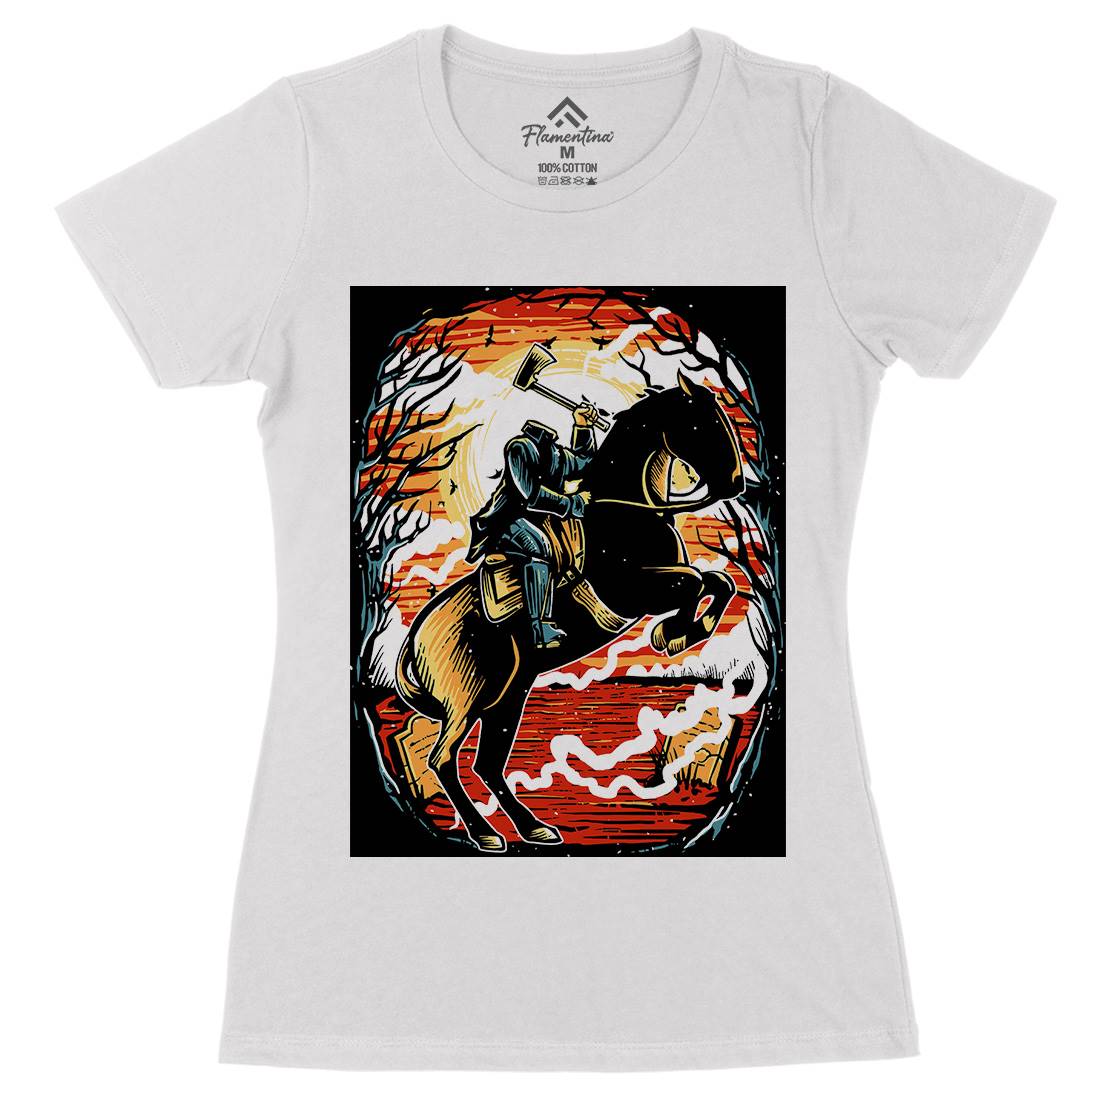 Headless Horseman Womens Organic Crew Neck T-Shirt Horror A543